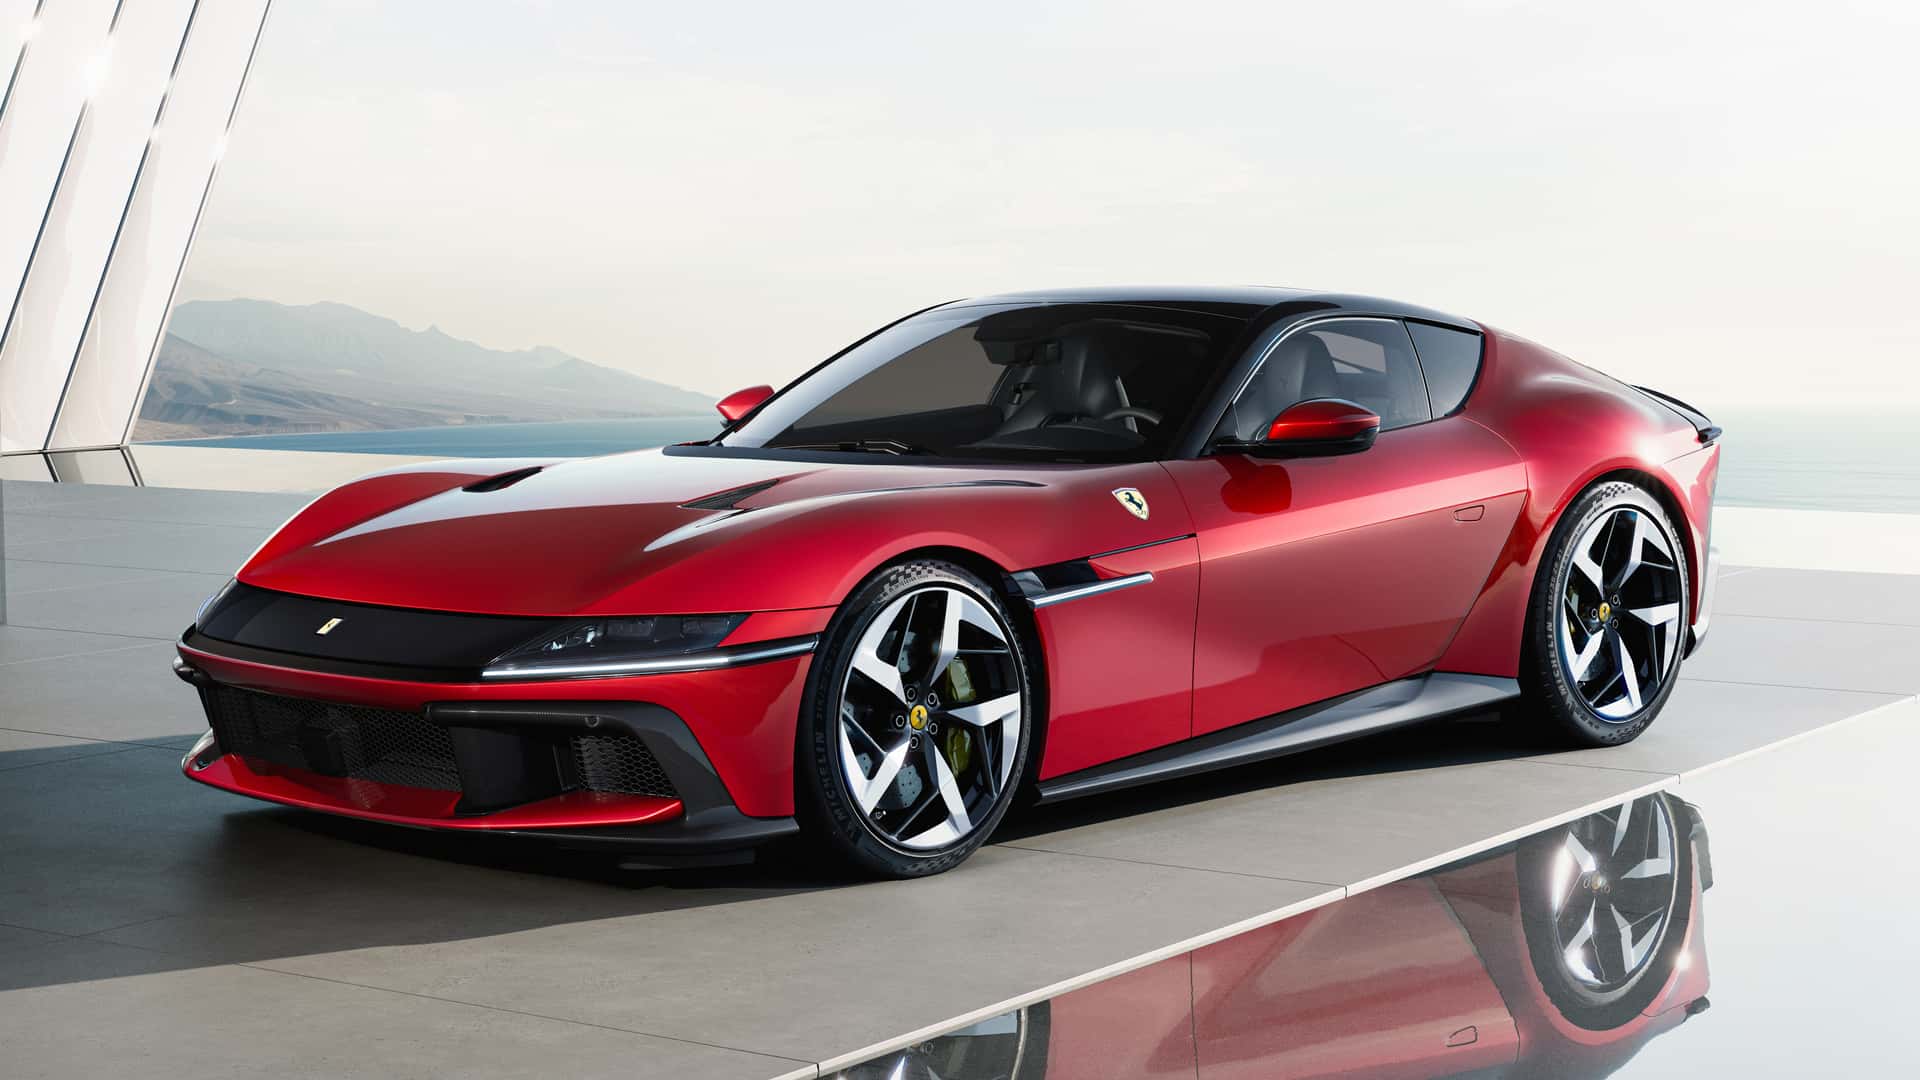 Ferrari 12Cilindri ra mắt, hội tụ đủ yếu tố mạnh mẽ, hiện đại và đắt ferrari-12cilindri-autodaily-10.jpg